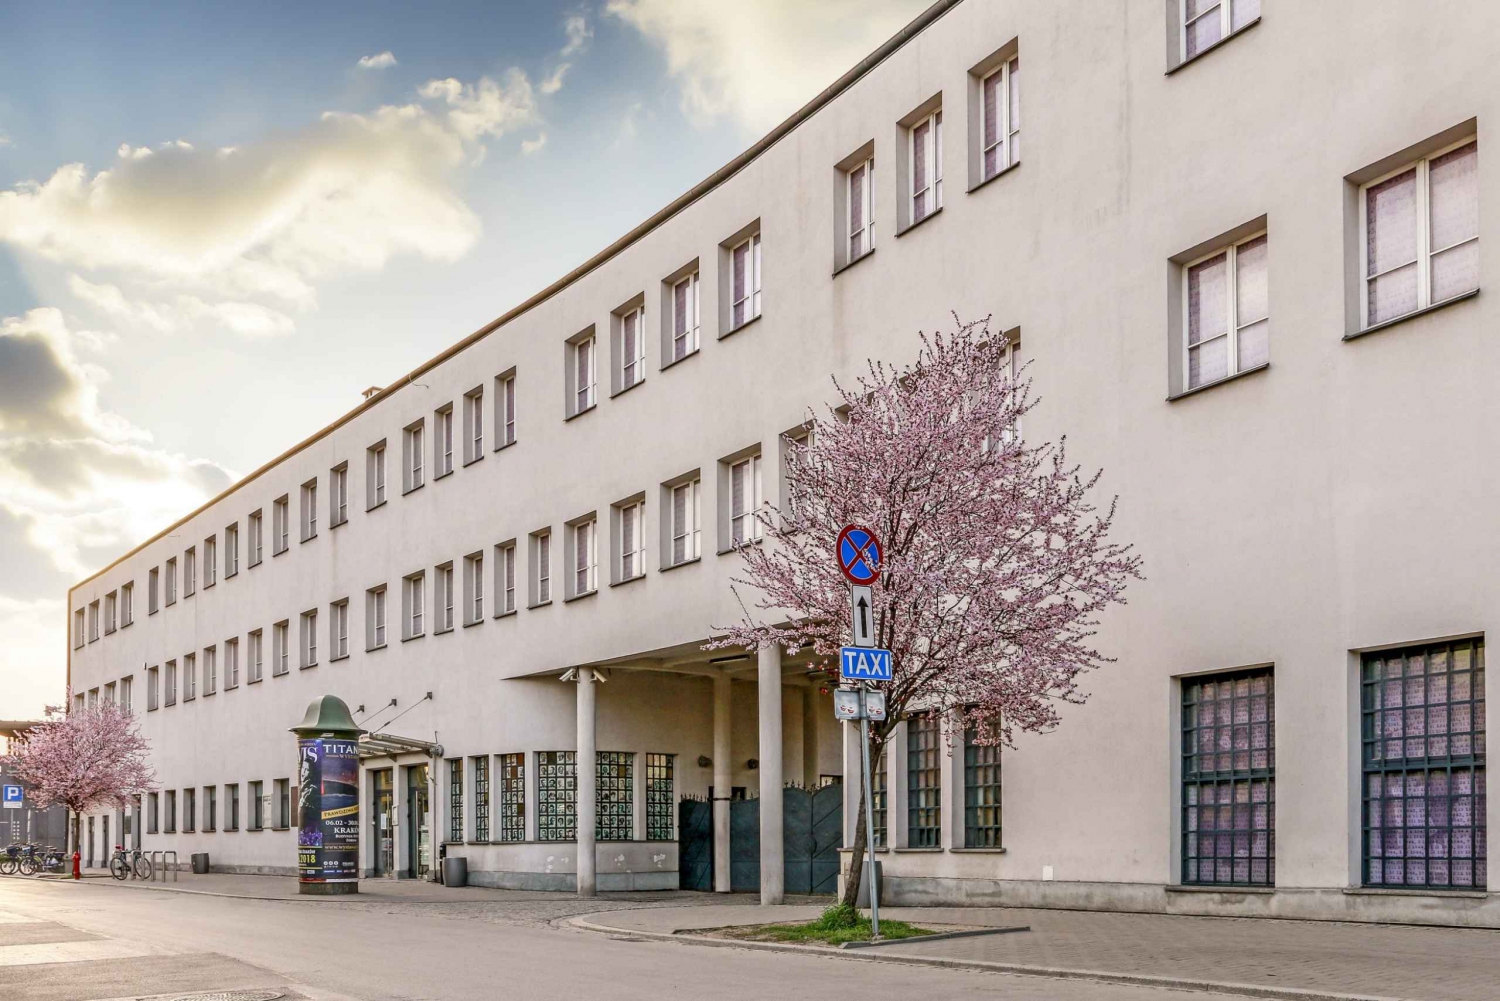 Krakau: Kazimierz, Schindlerfabriek & Getto rondleiding